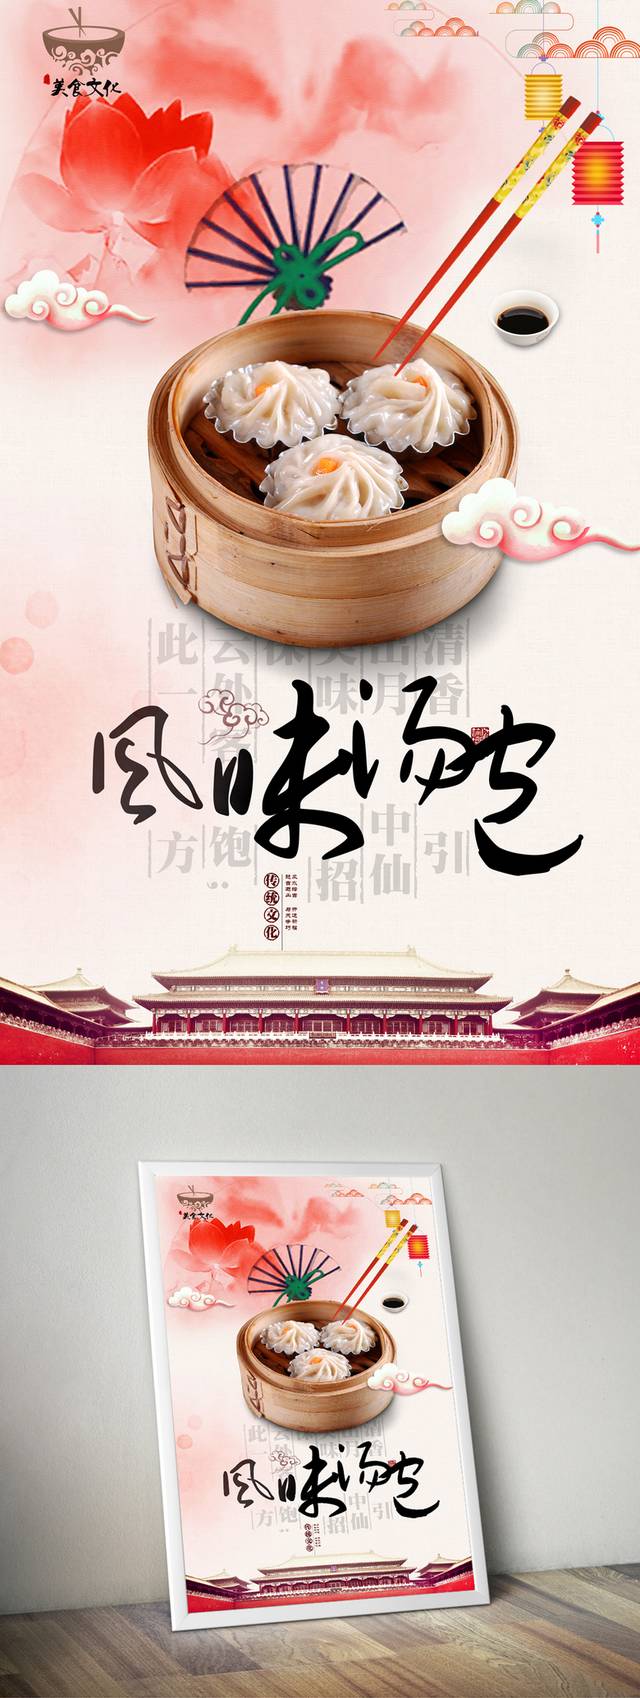 中式汤包宣传海报设计psd